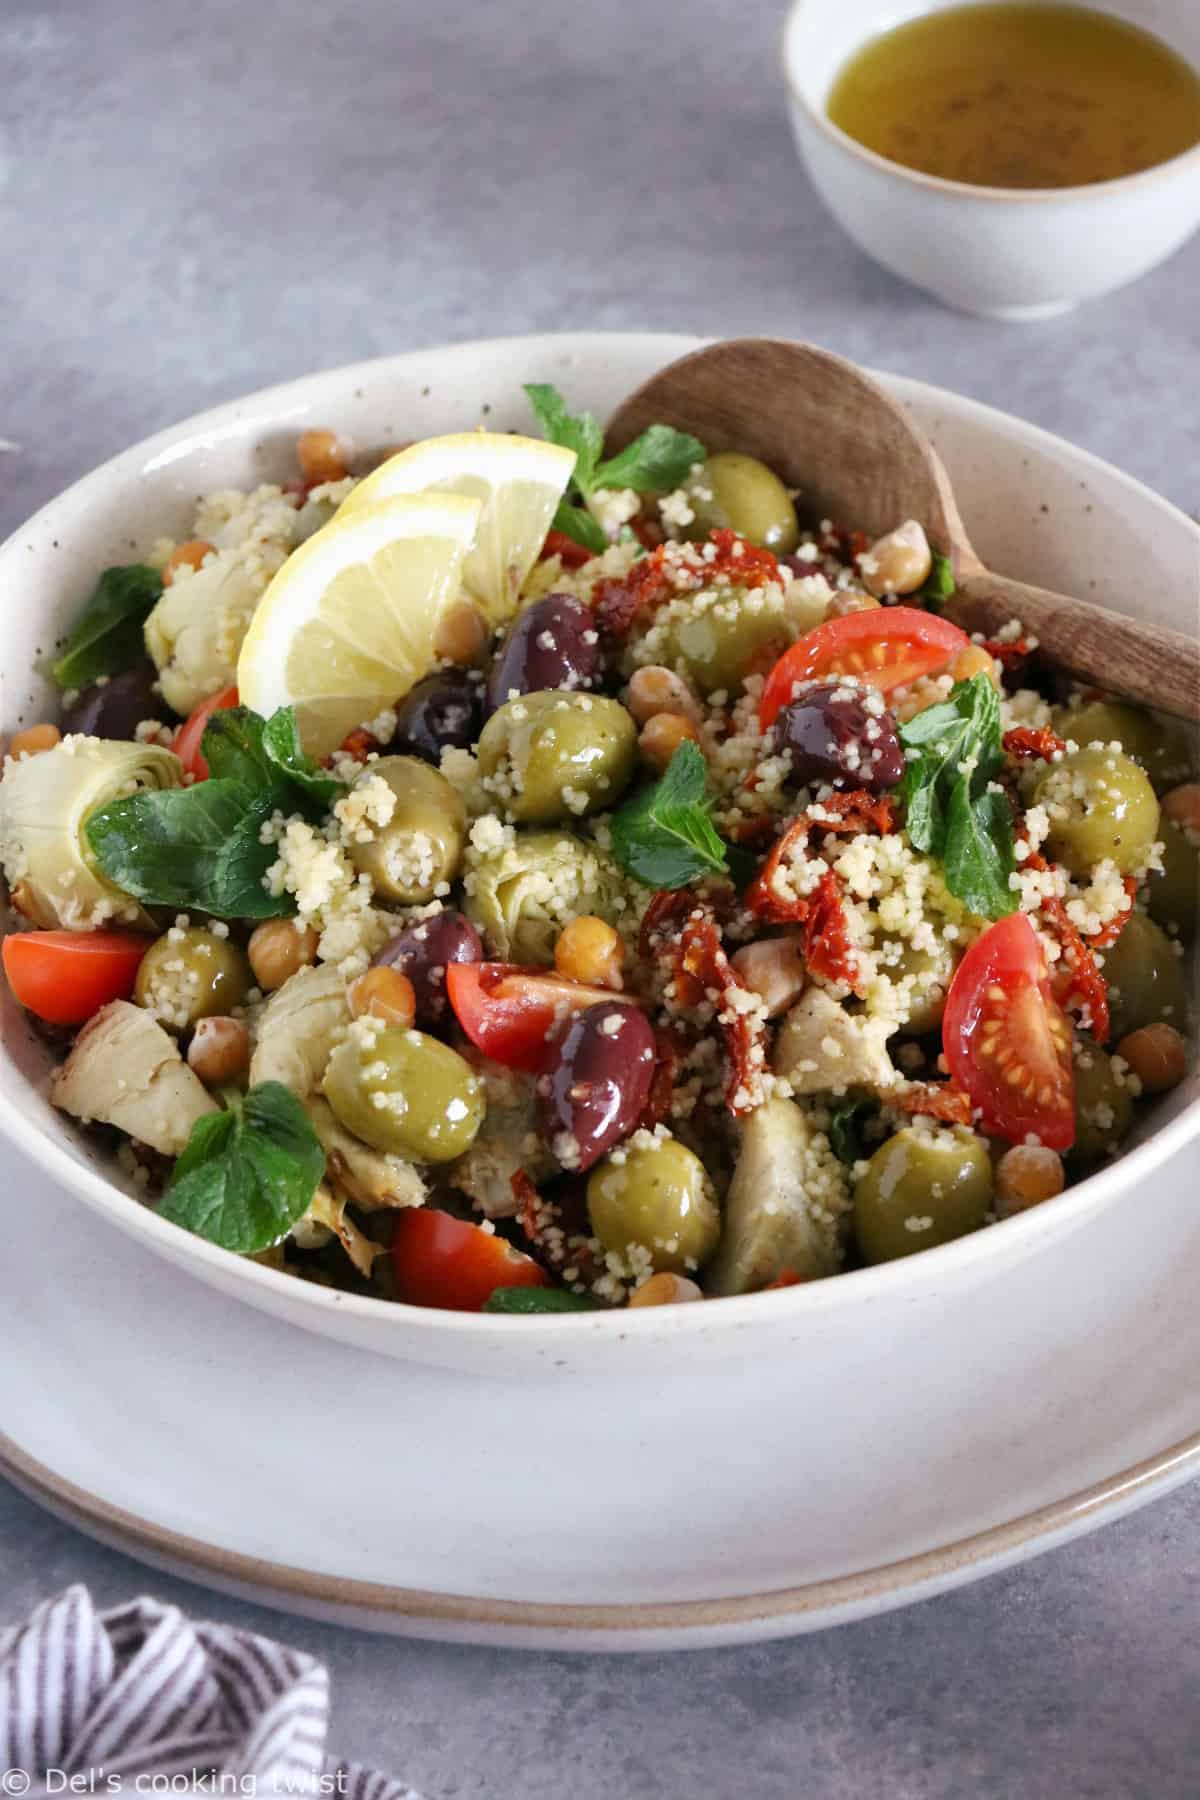 On met un peu de soleil dans notre assiette avec cette salade de couscous méditerranéenne aux pois chiches, olives et coeurs d'artichauts.